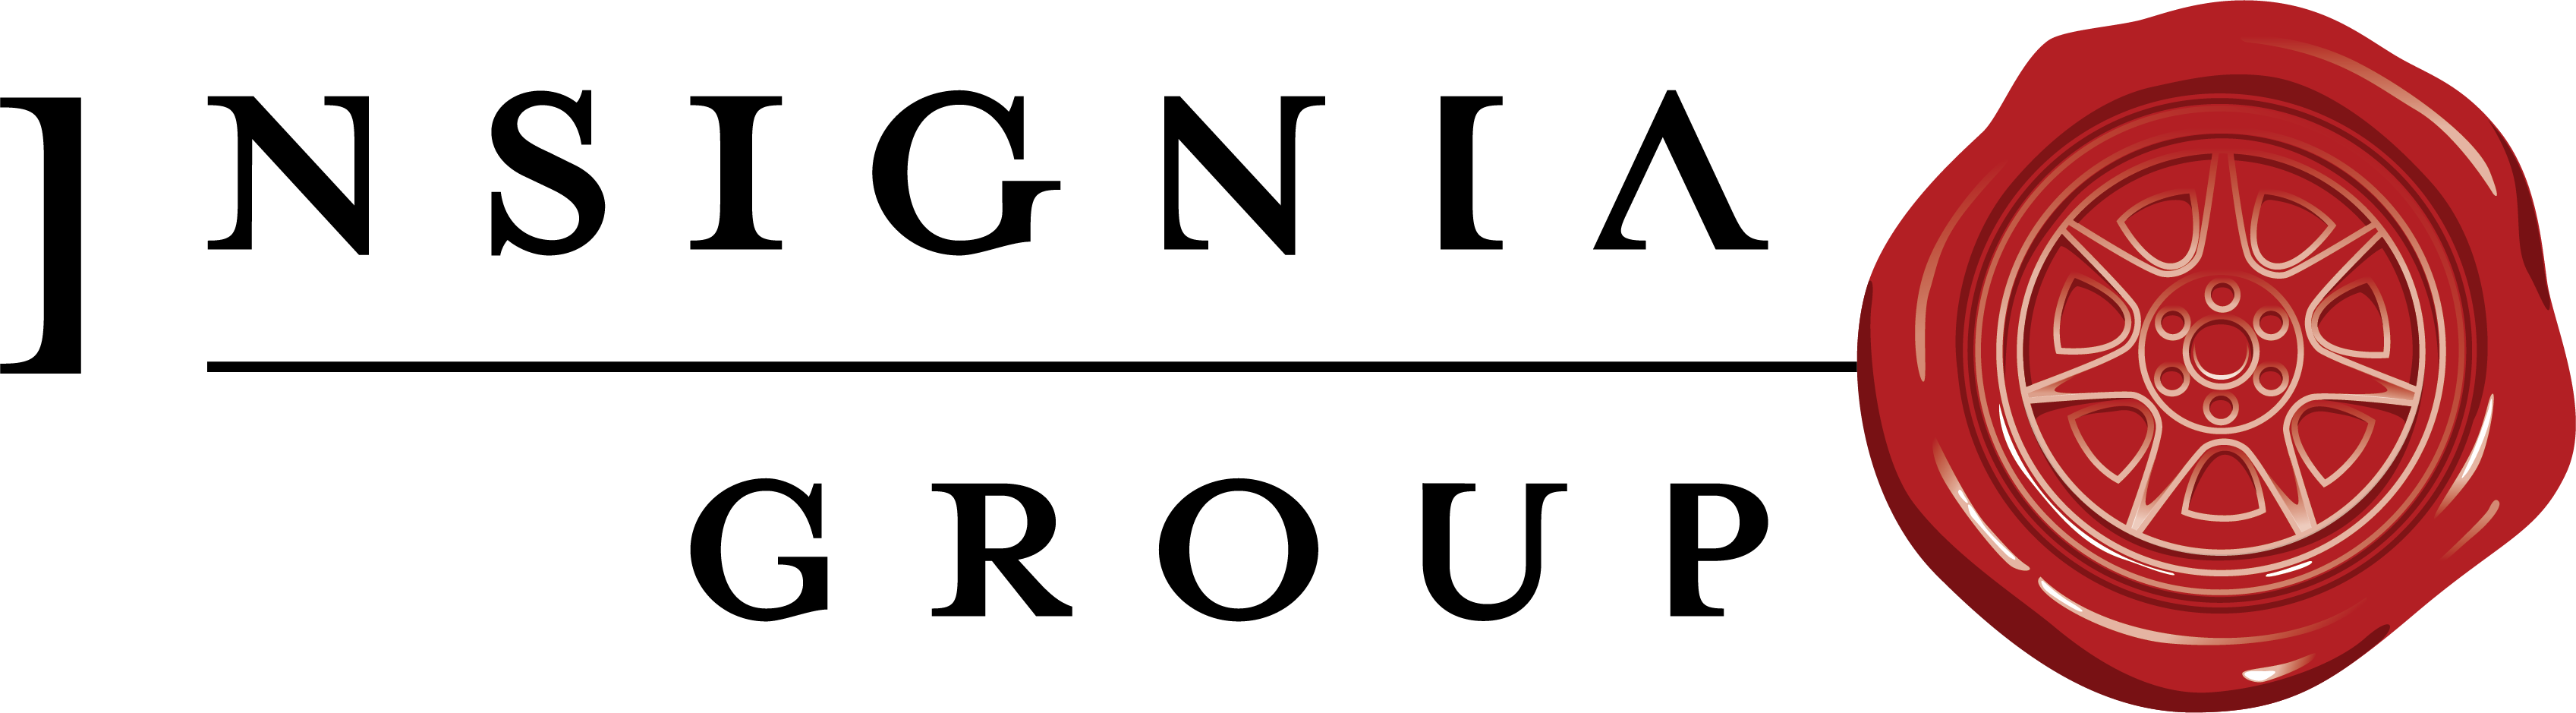 Insignia Group Company Logo